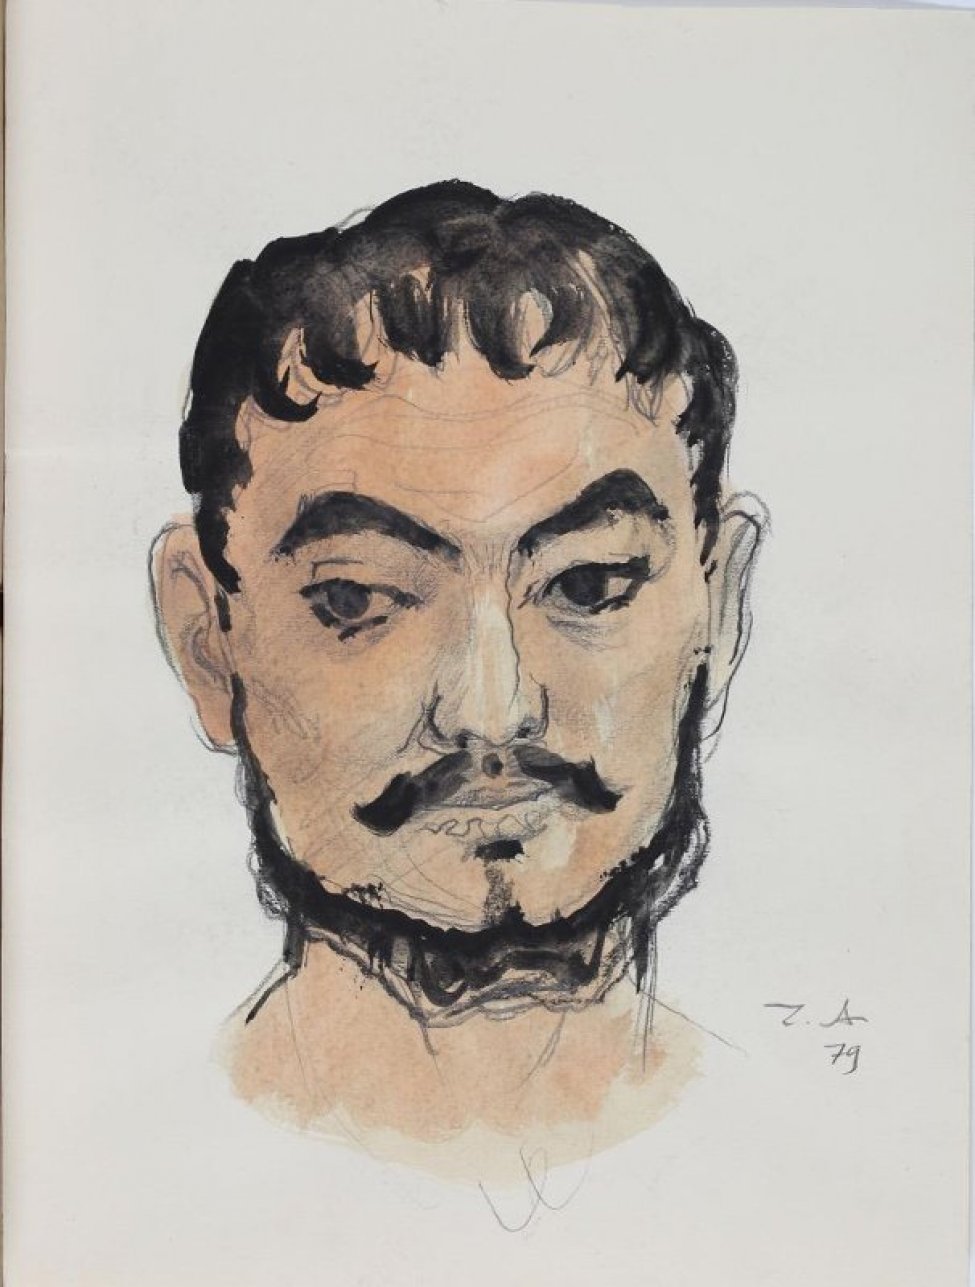 Оплечное изображение в фас молодого темноволосого мужчины с усиками и бородой.